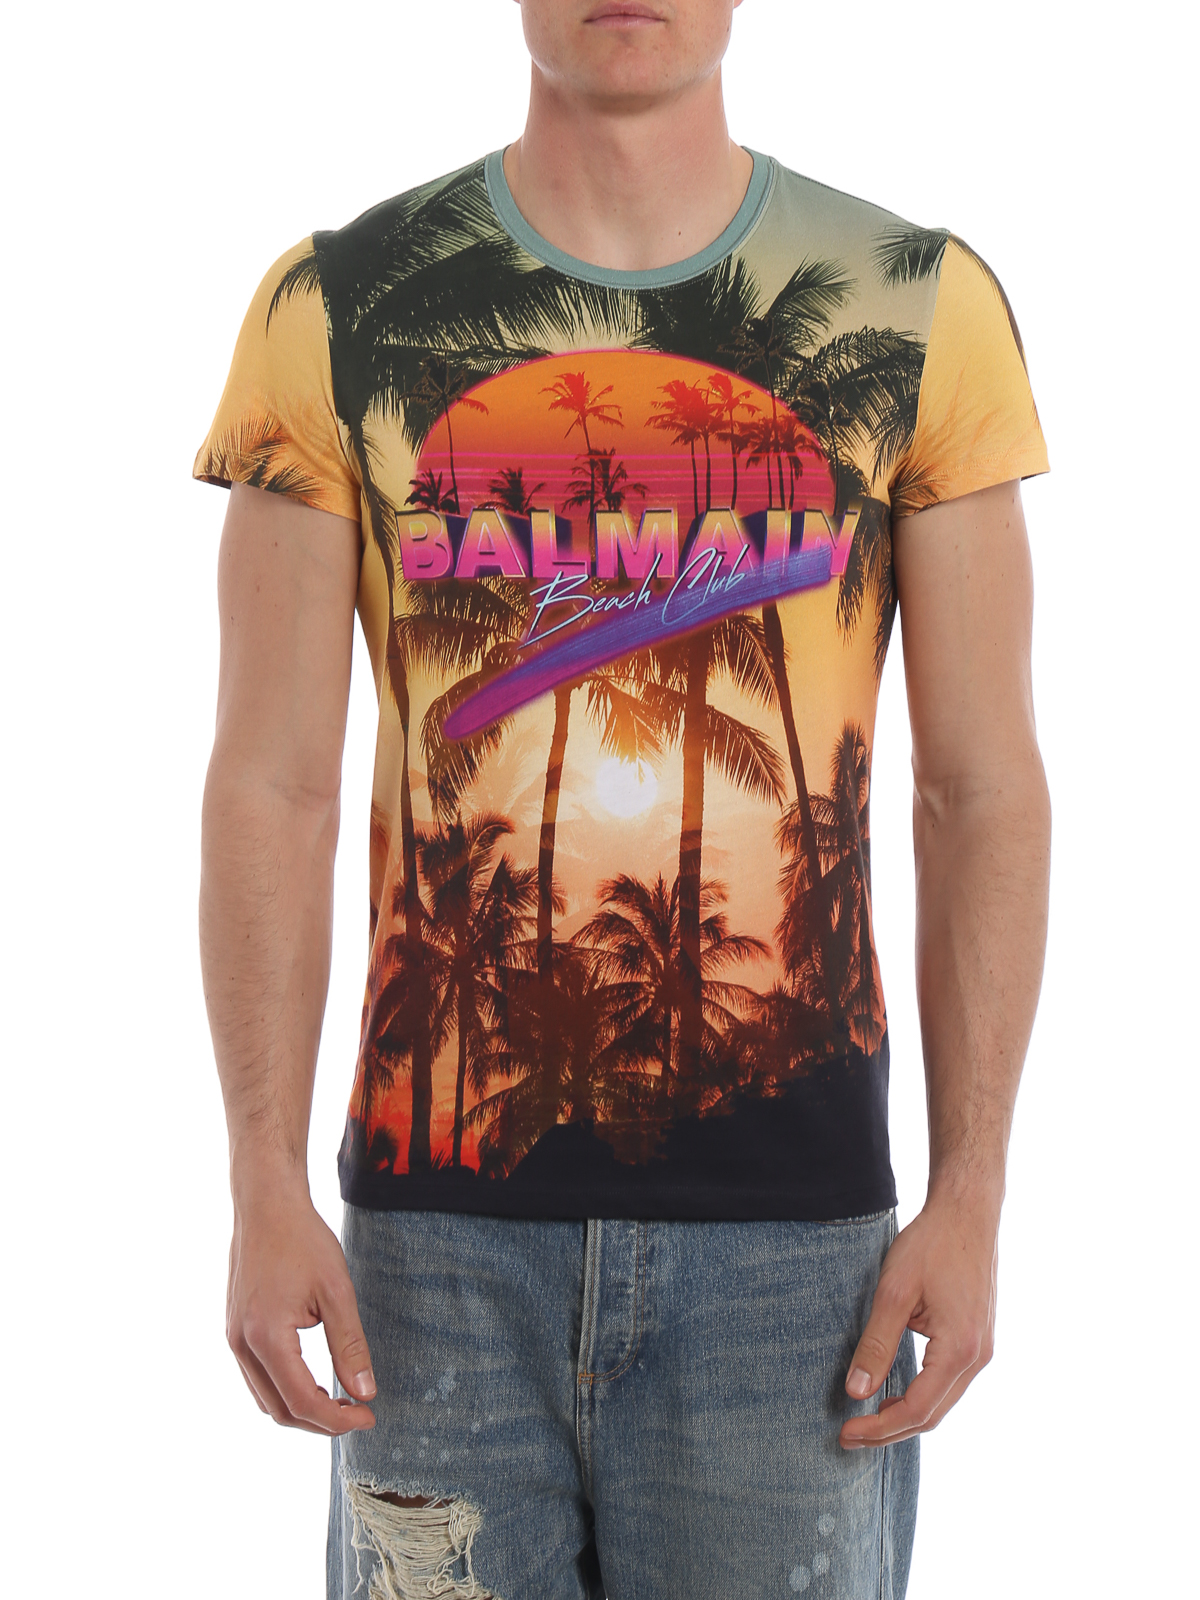 T-shirts Balmain - Beach Club print - RH11601I026AAA